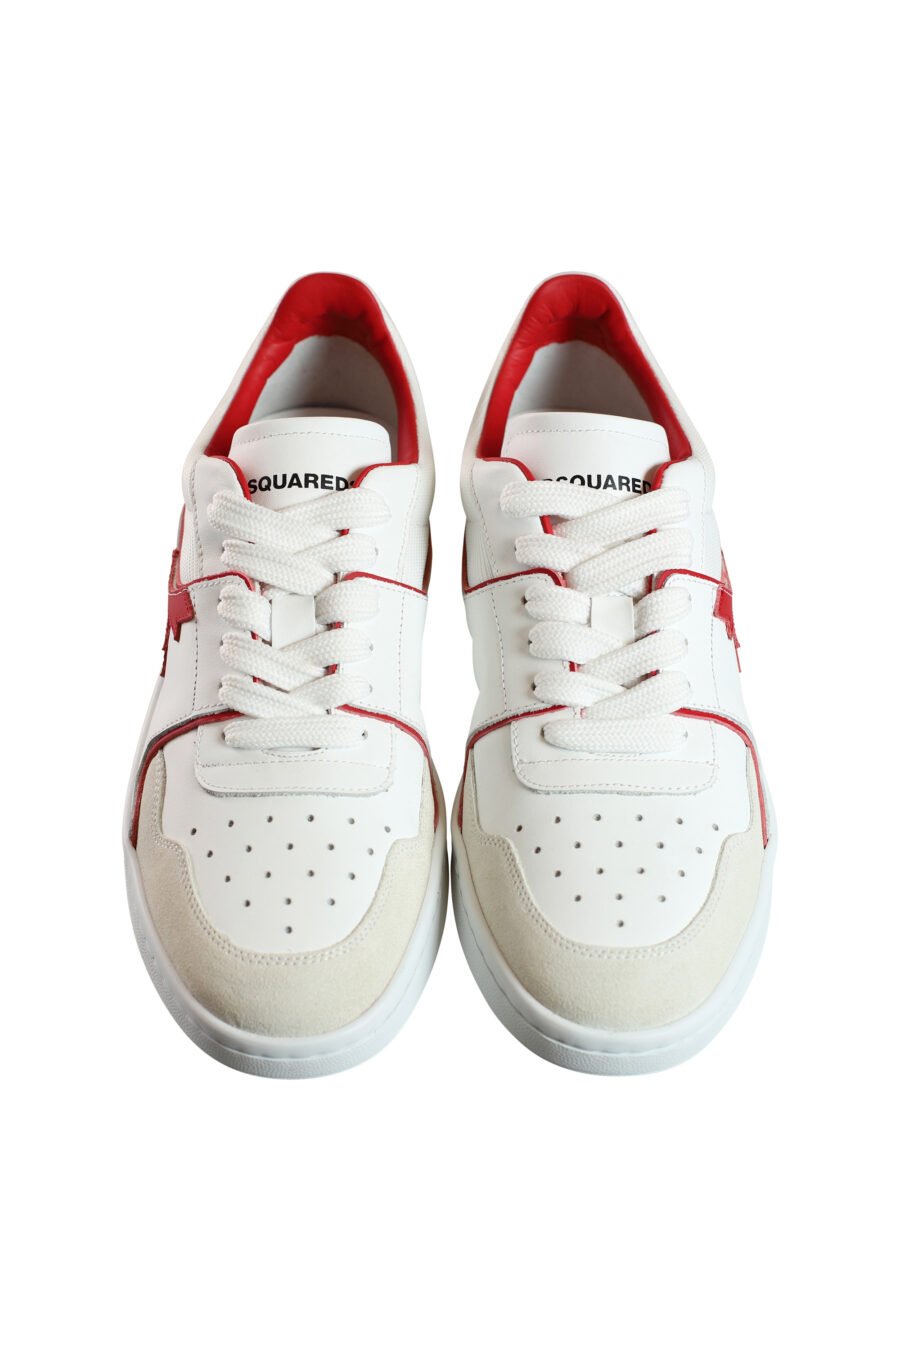 Baskets mixtes blanches avec logo et détails rouges - 8055777188194 6